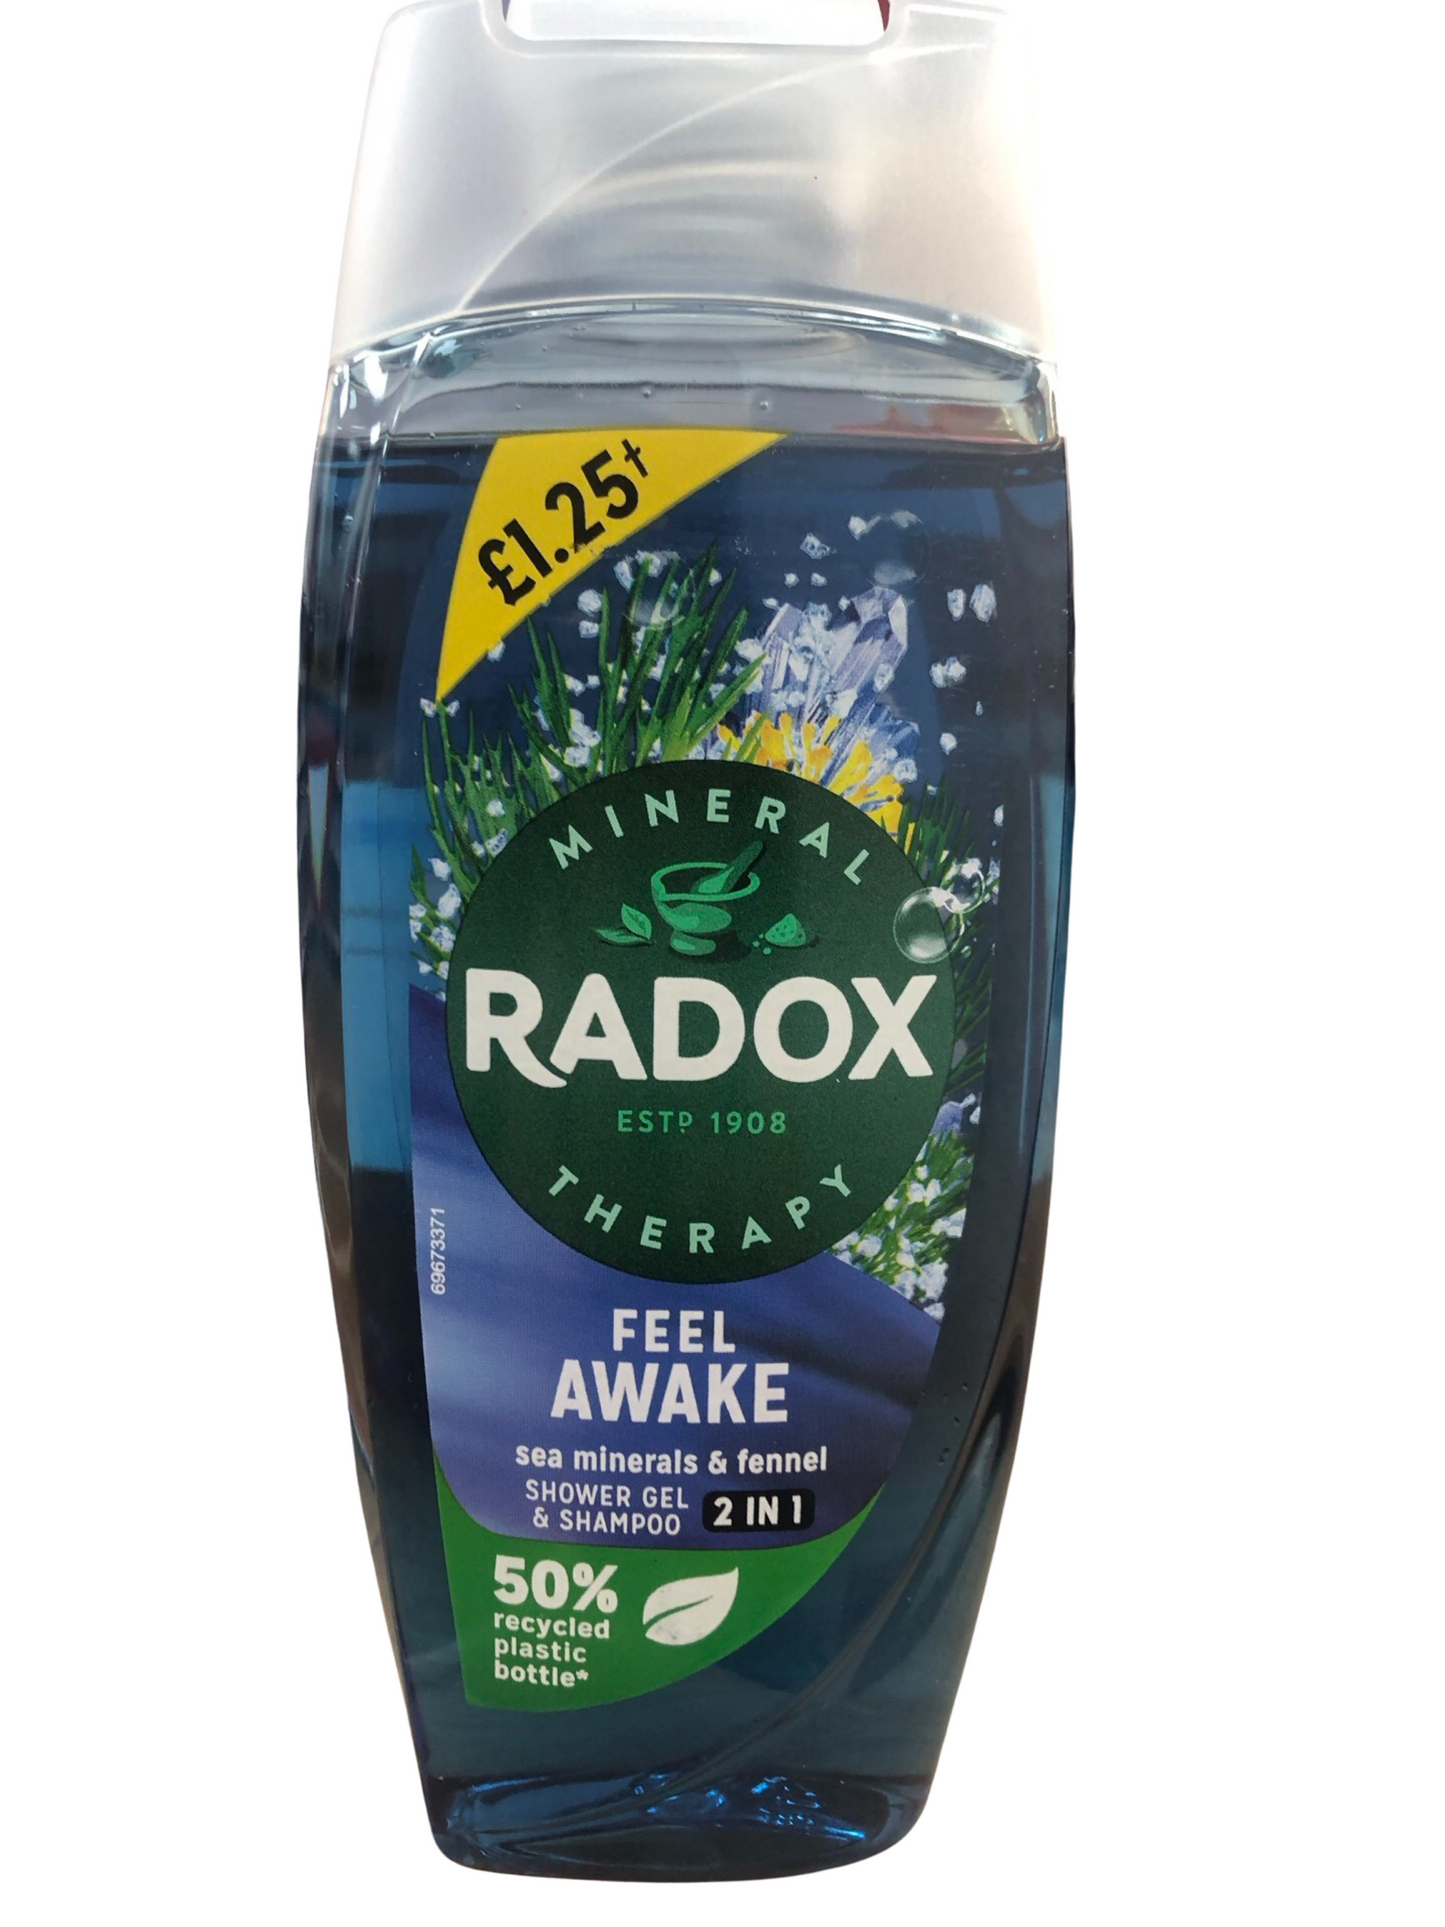 Radox feel awake shower gel & shampoo 2in1 225g